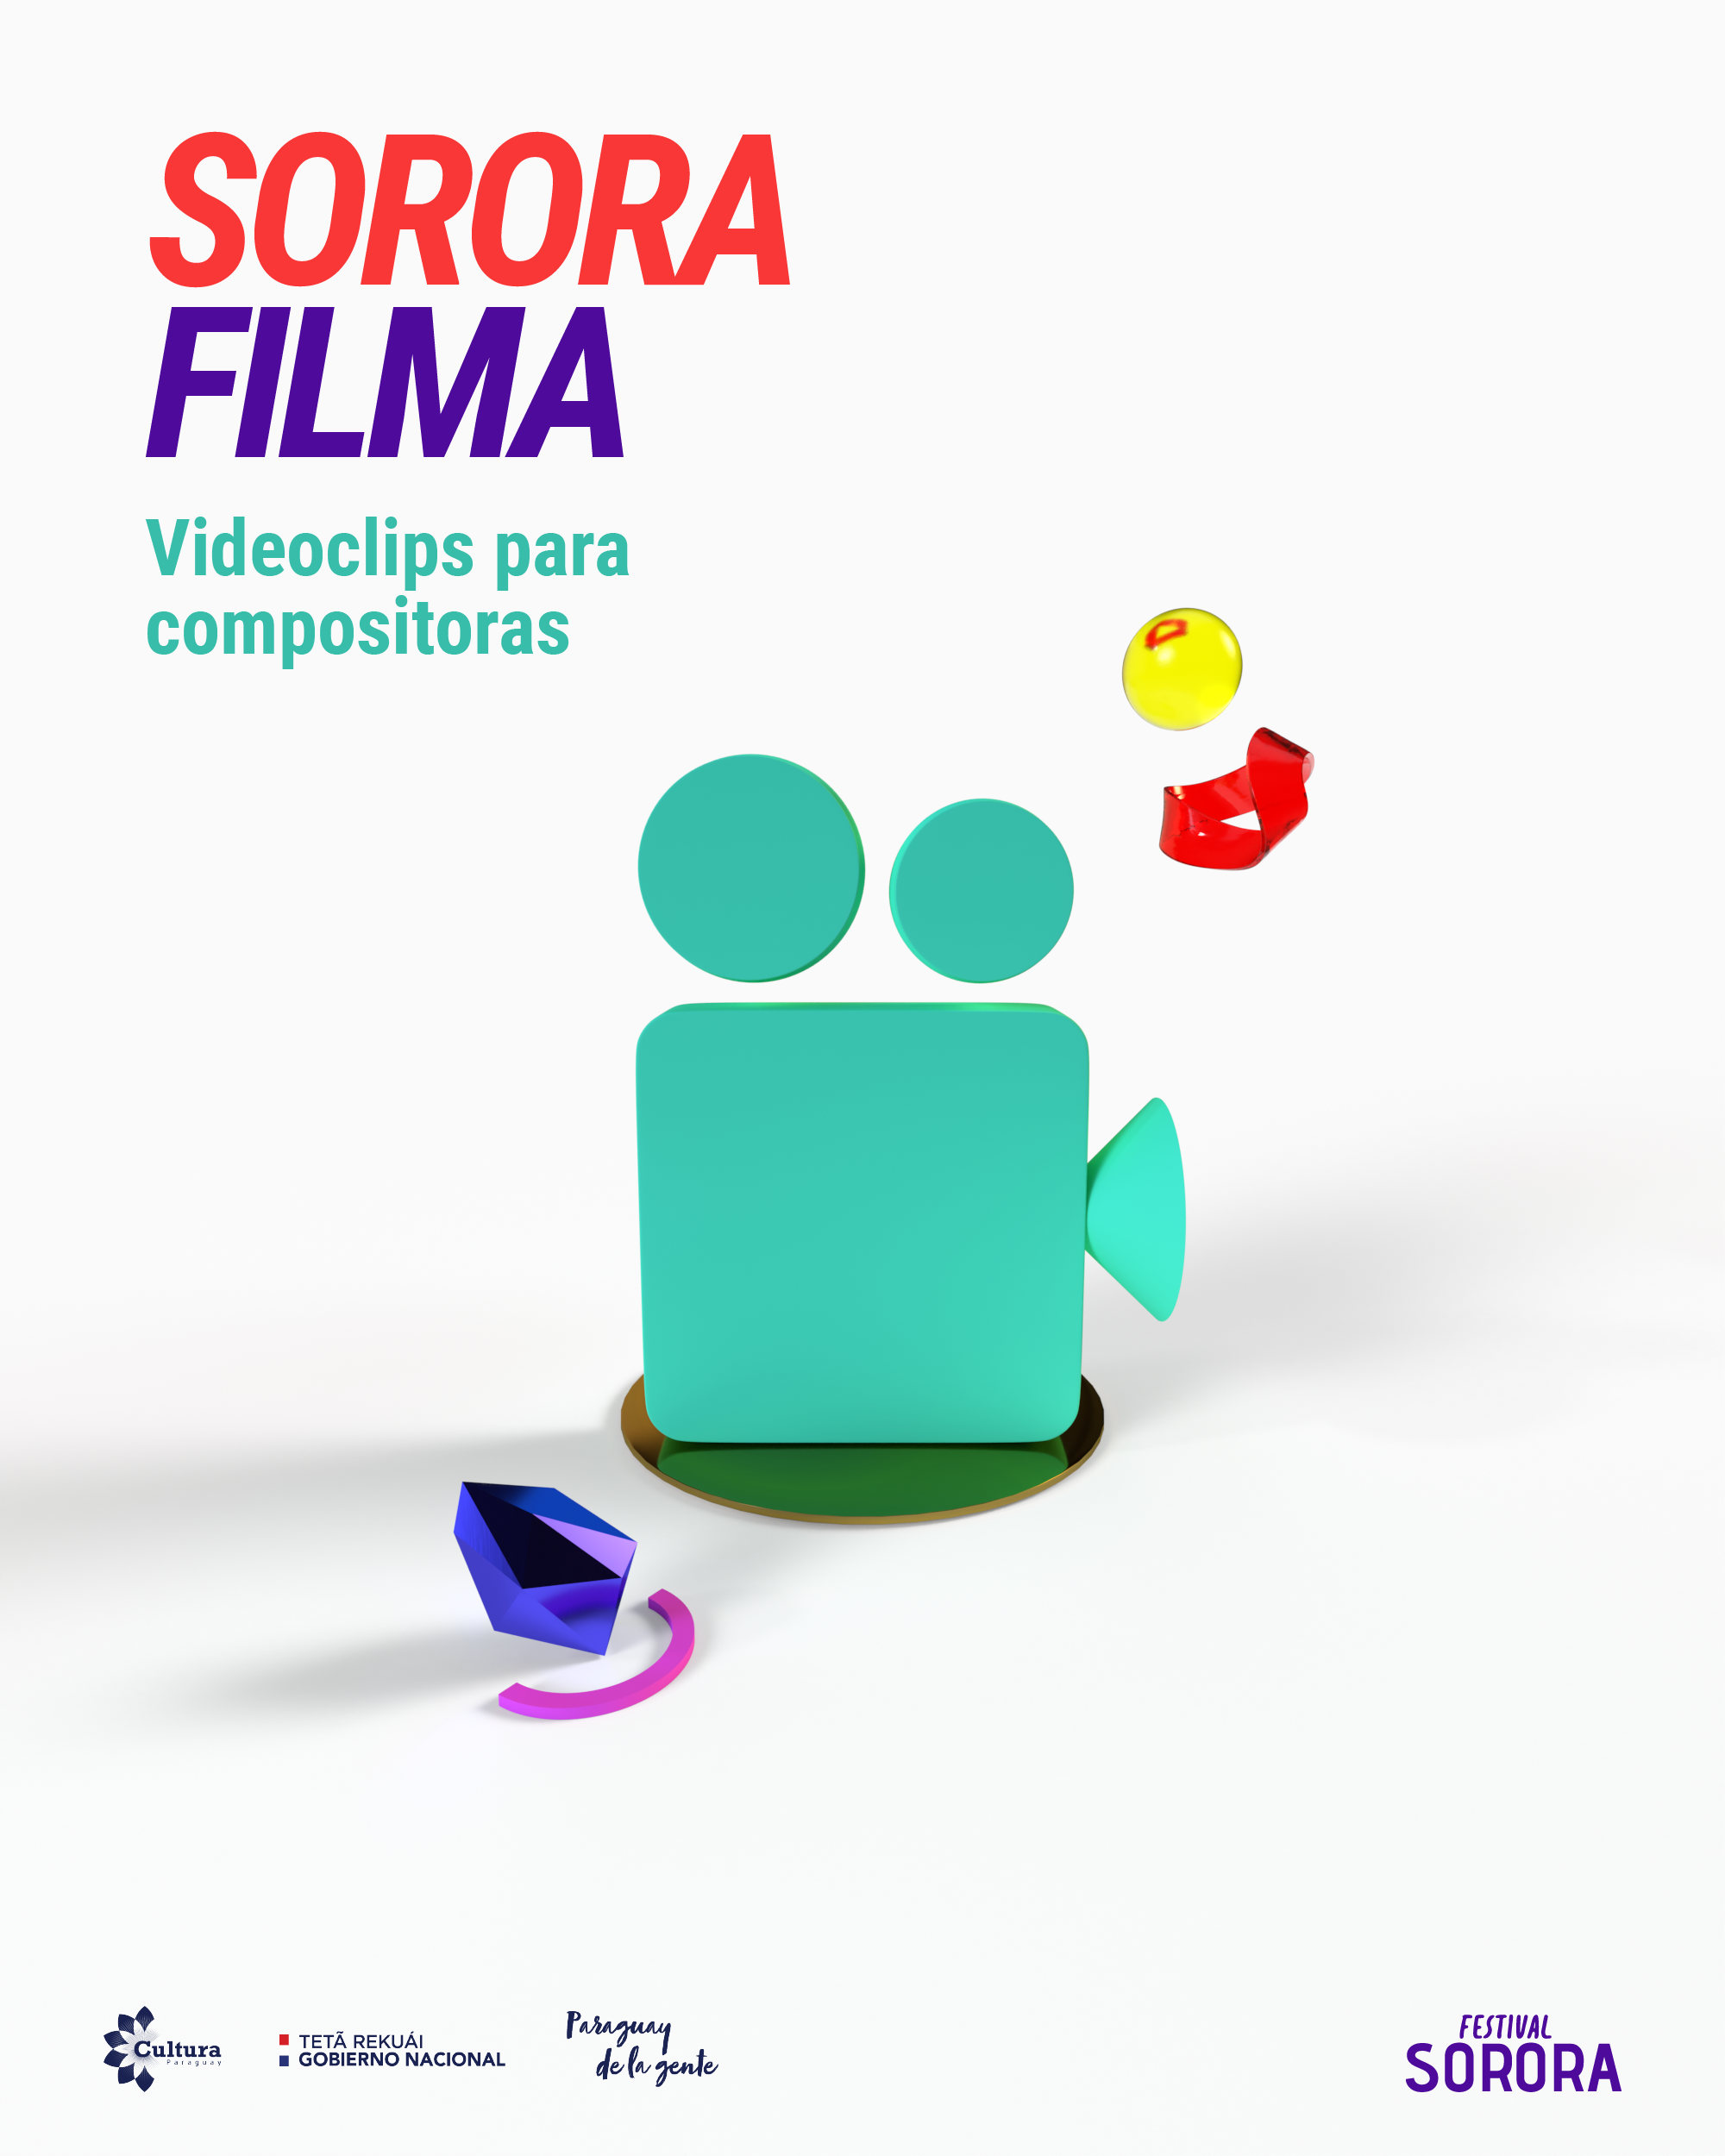 Fondos de Cultura: #SororaFilma videoclips para compositoras imagen